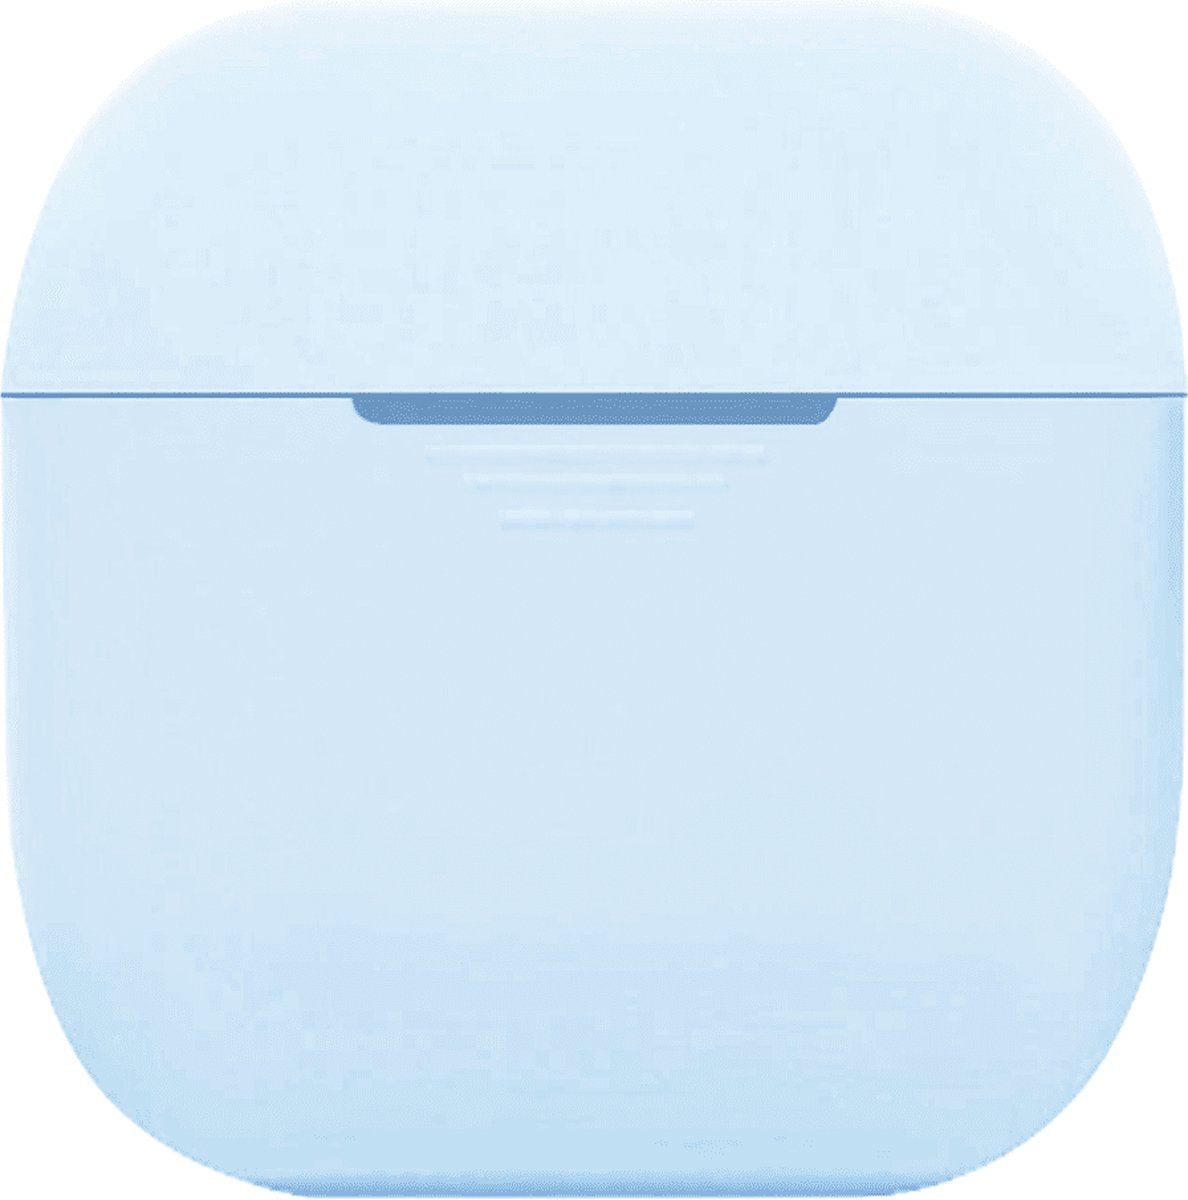 Telefoonglaasje Headset Hoesje - Geschikt voor Apple AirPods - Siliconen - LichtBlauw - Beschermhoes - Case